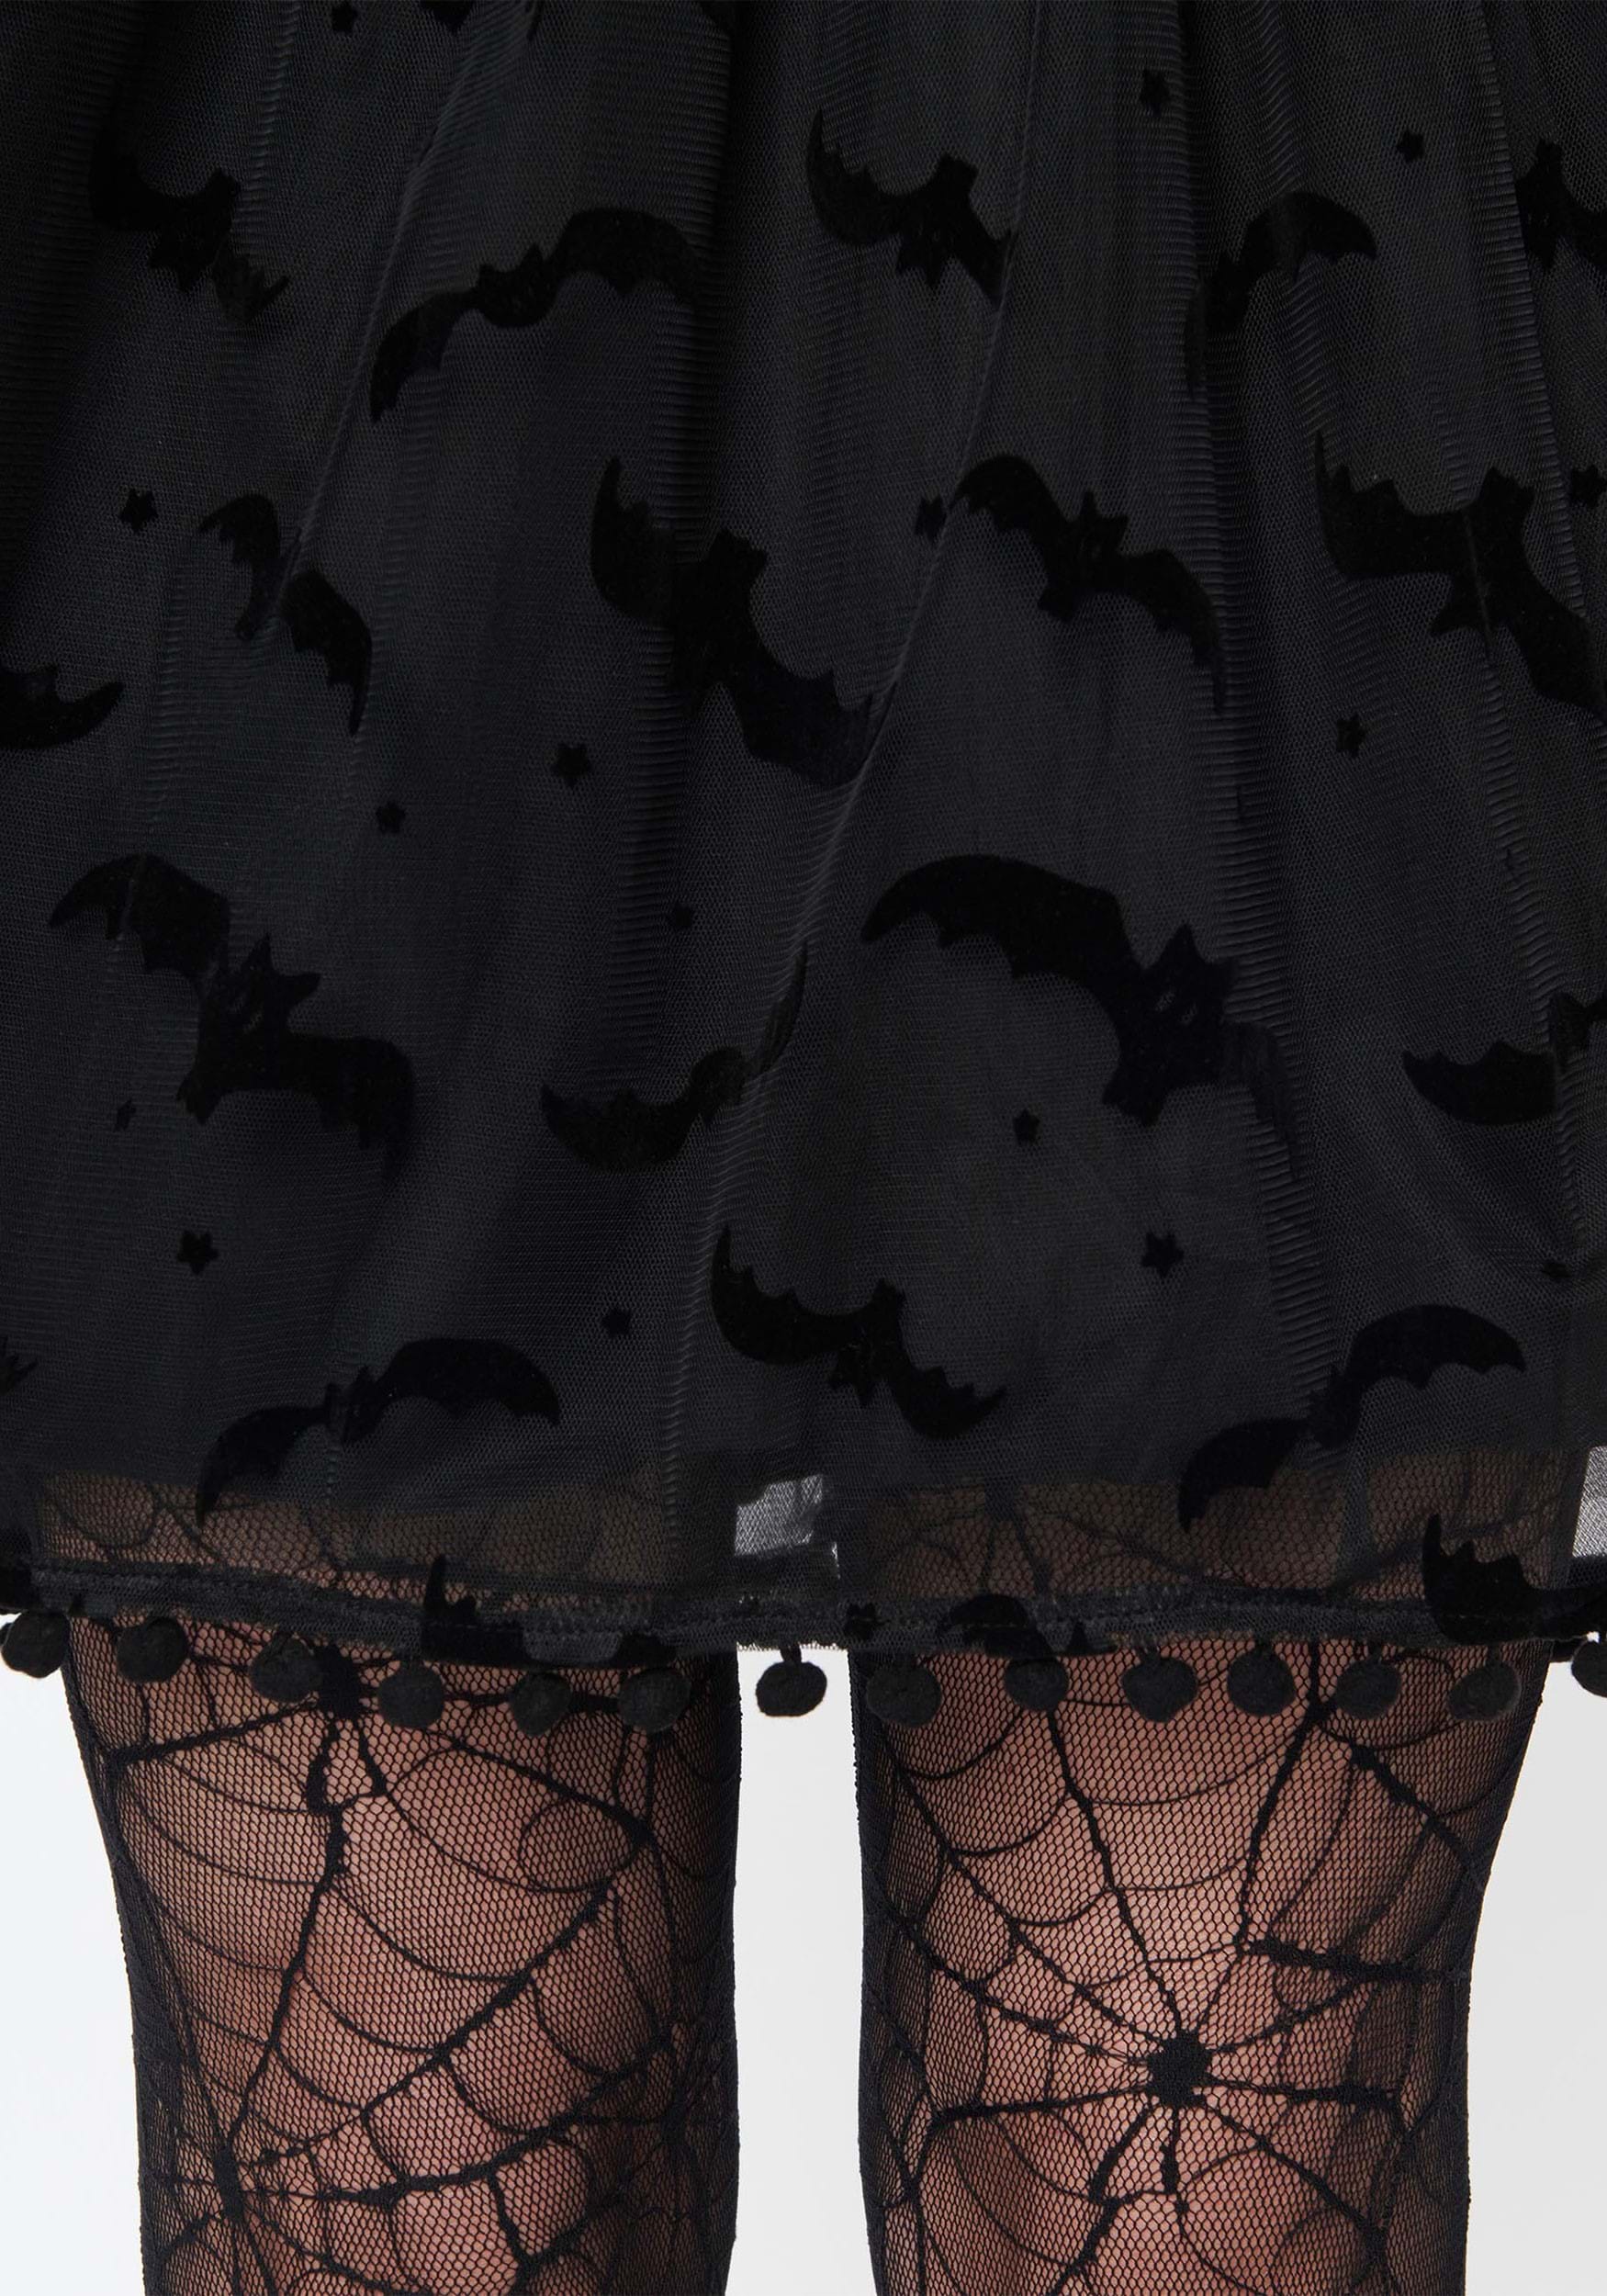 Unique Vintage Bat Flock Print Babydoll Dress For Women